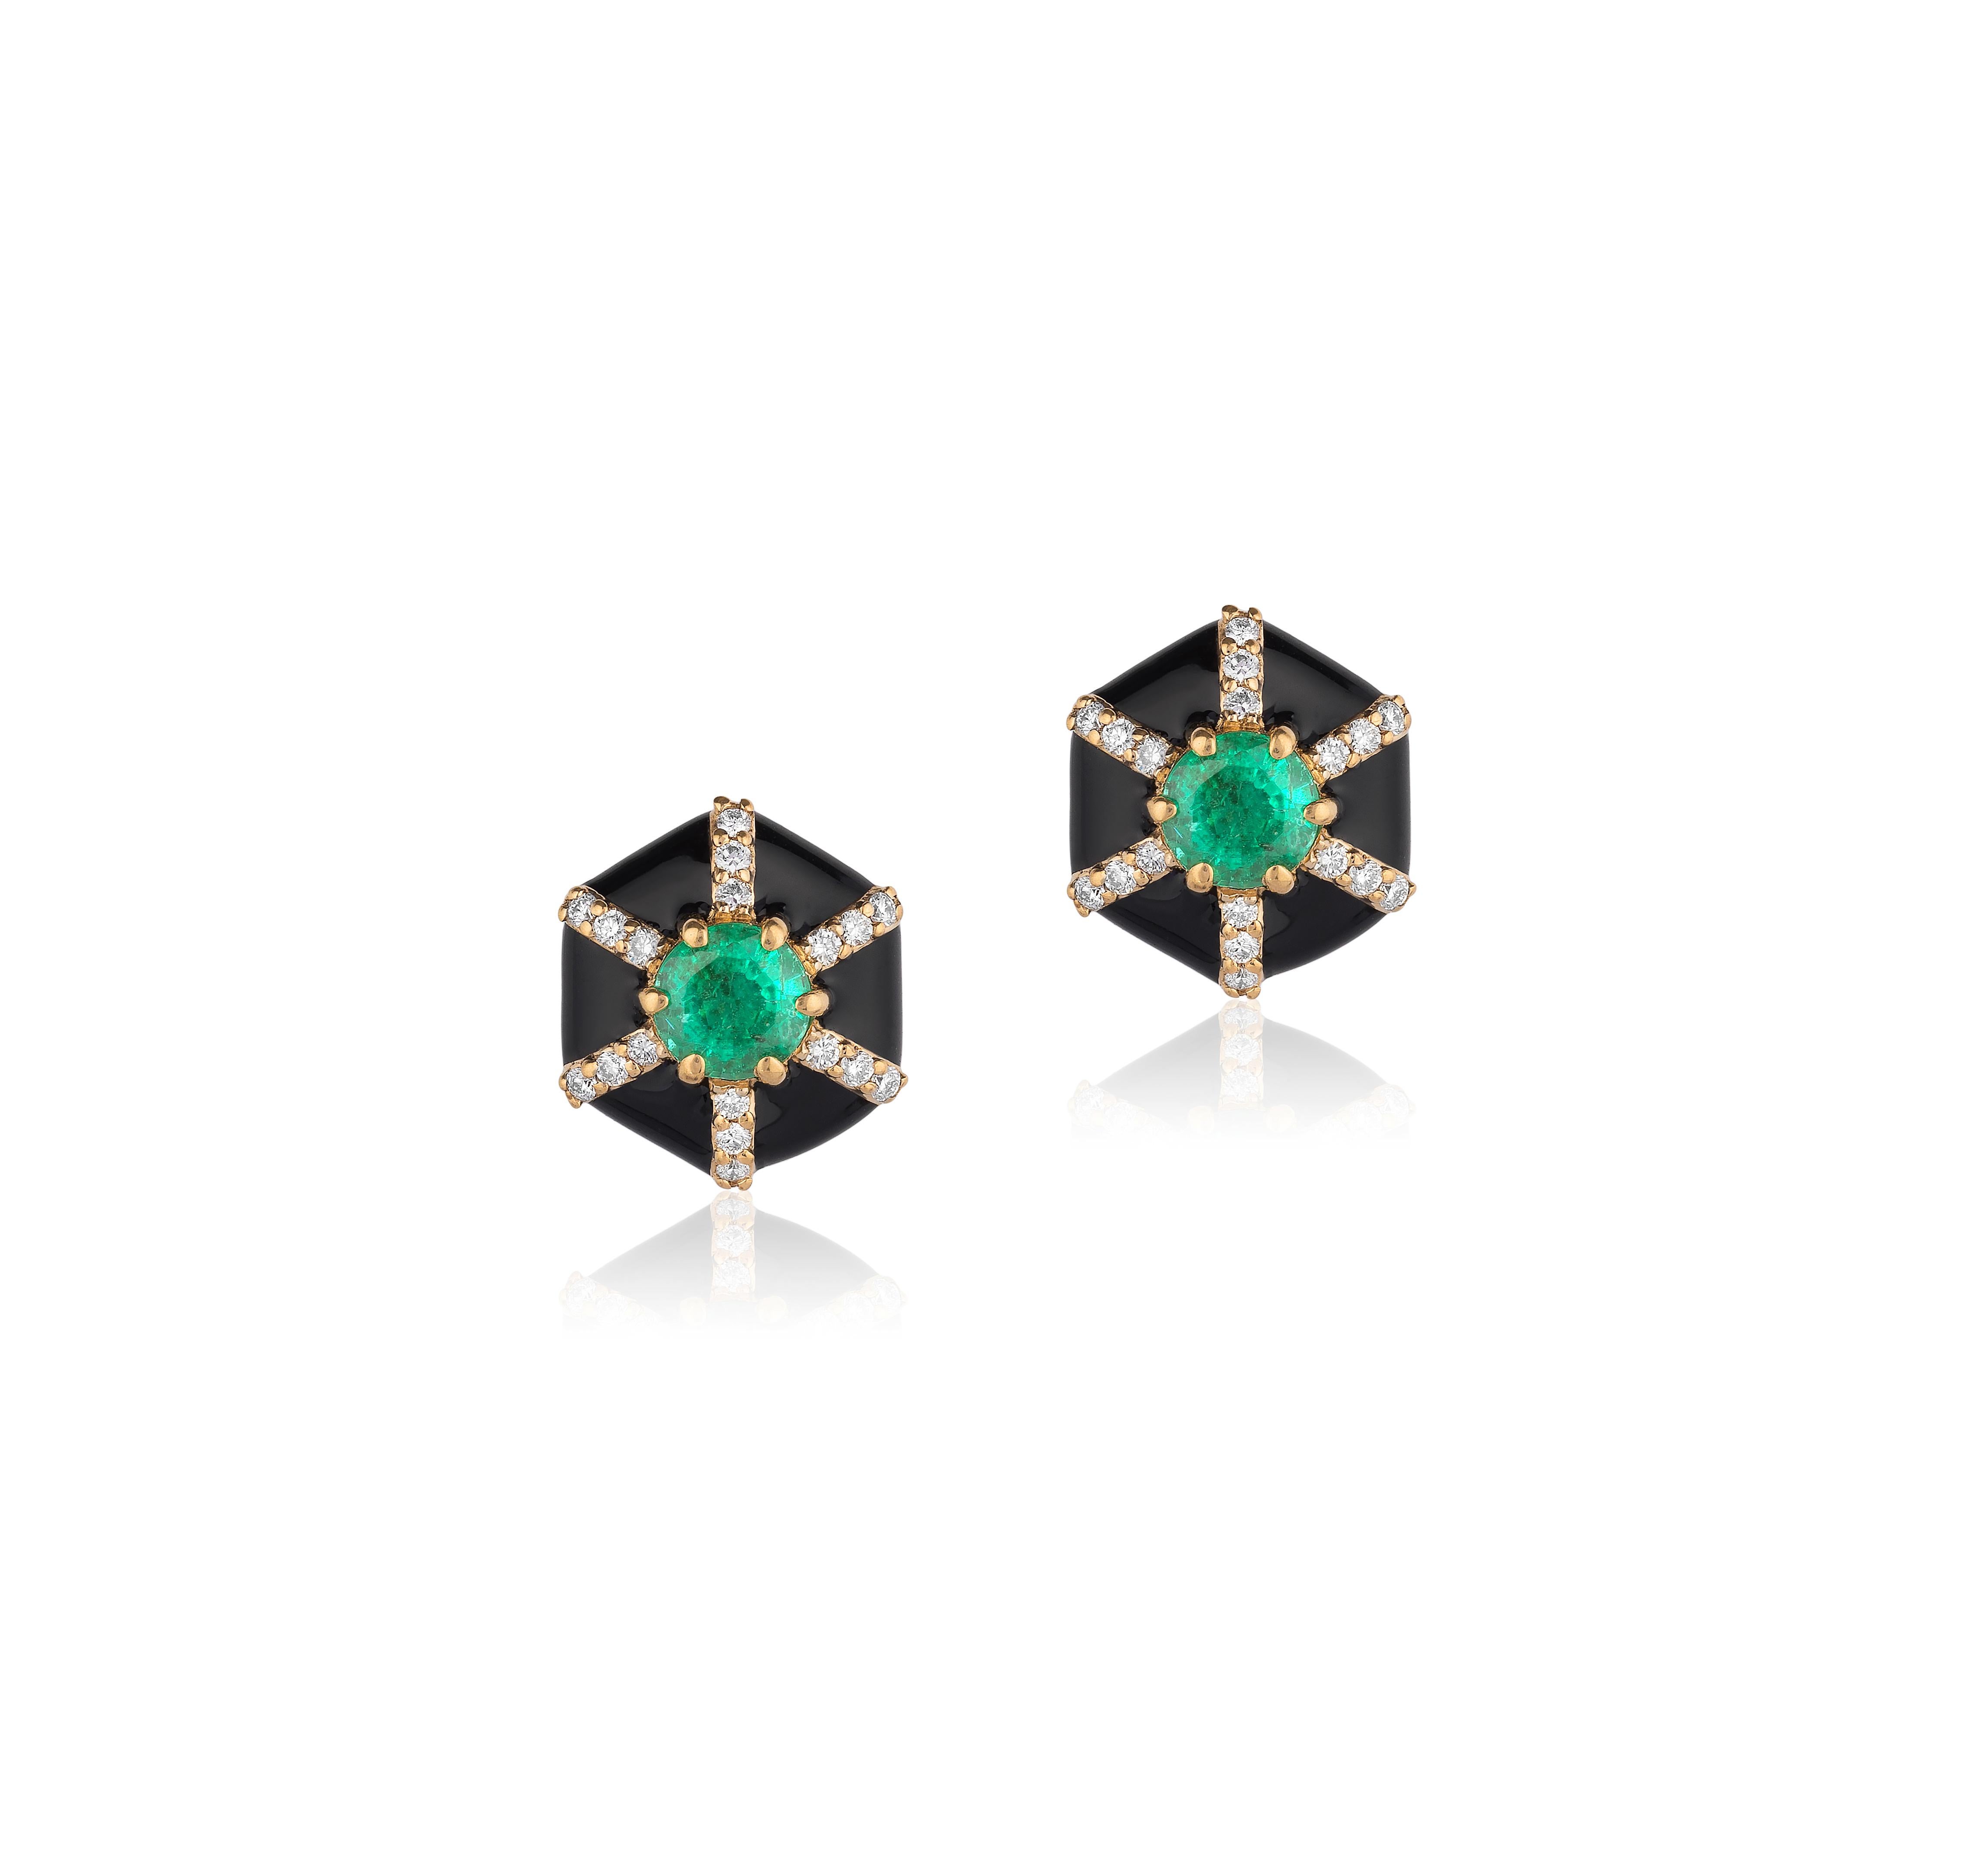 4 stone diamond stud earrings